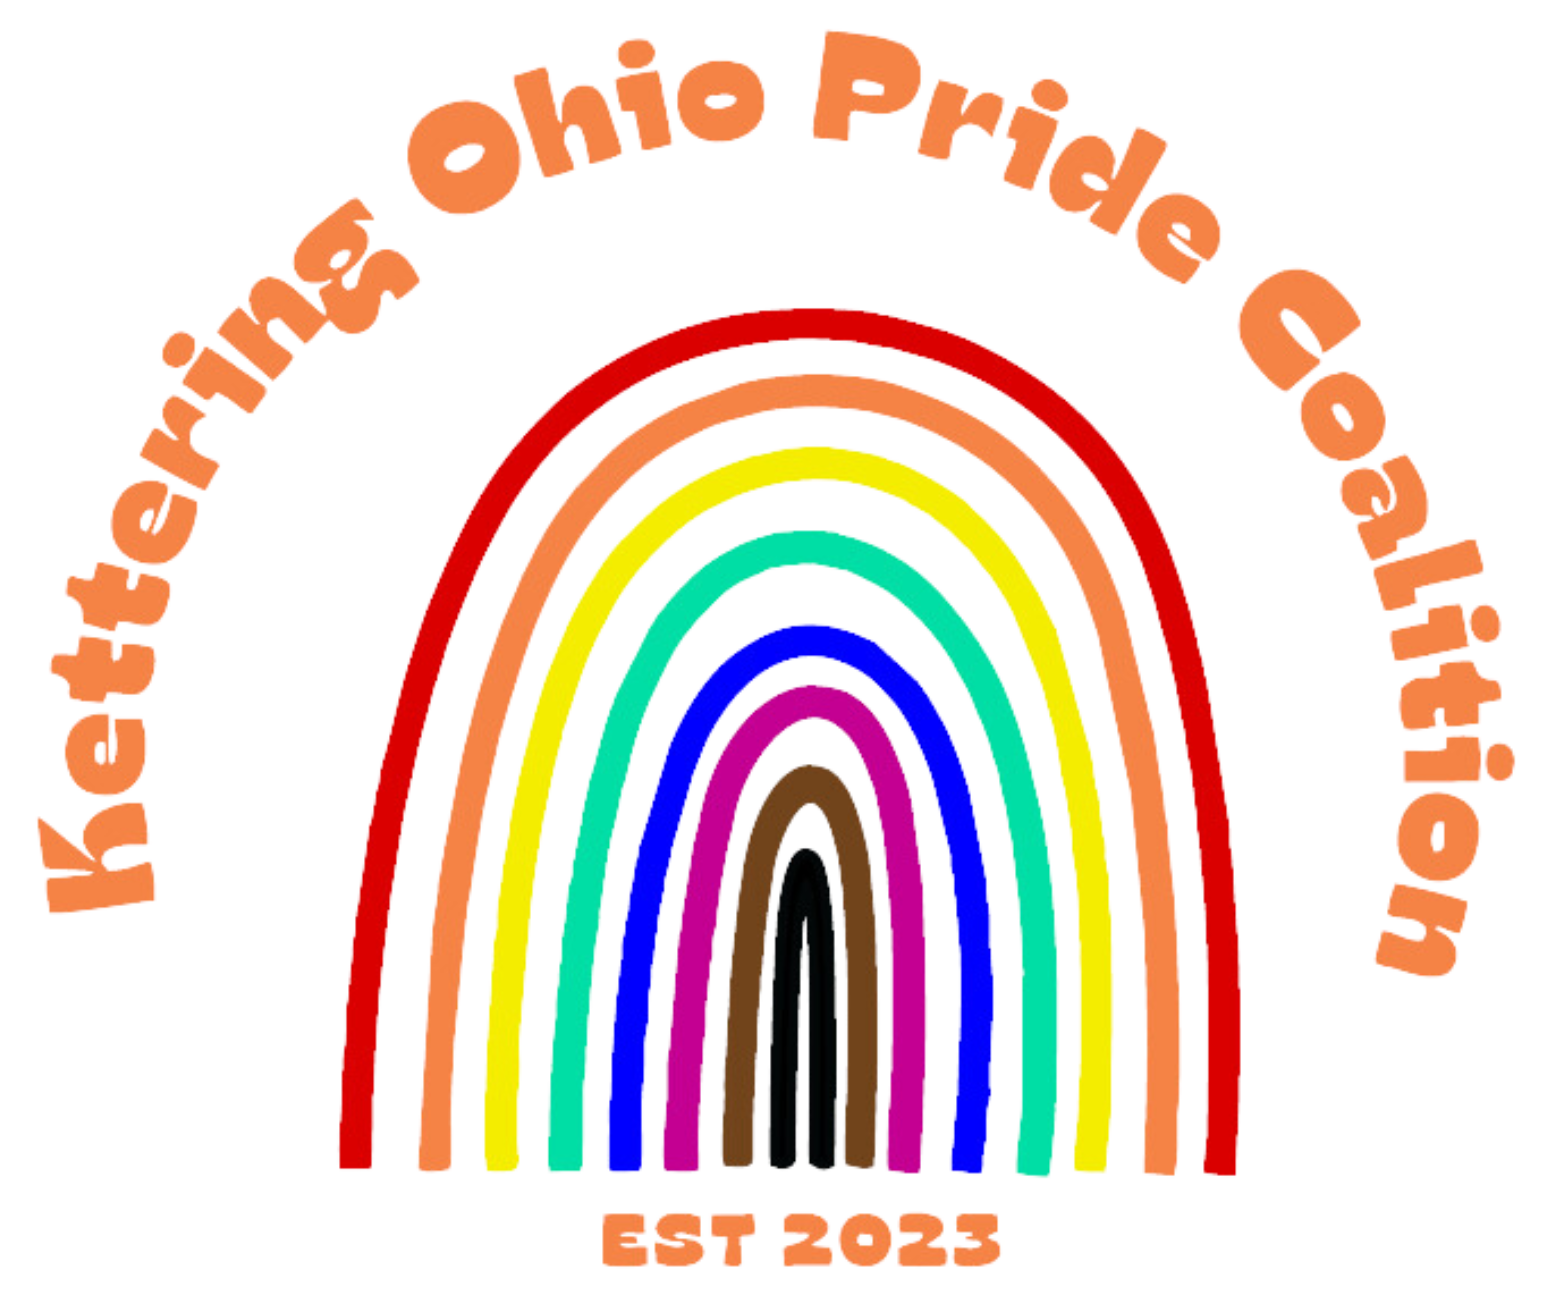 Kettering Ohio Pride Coalition